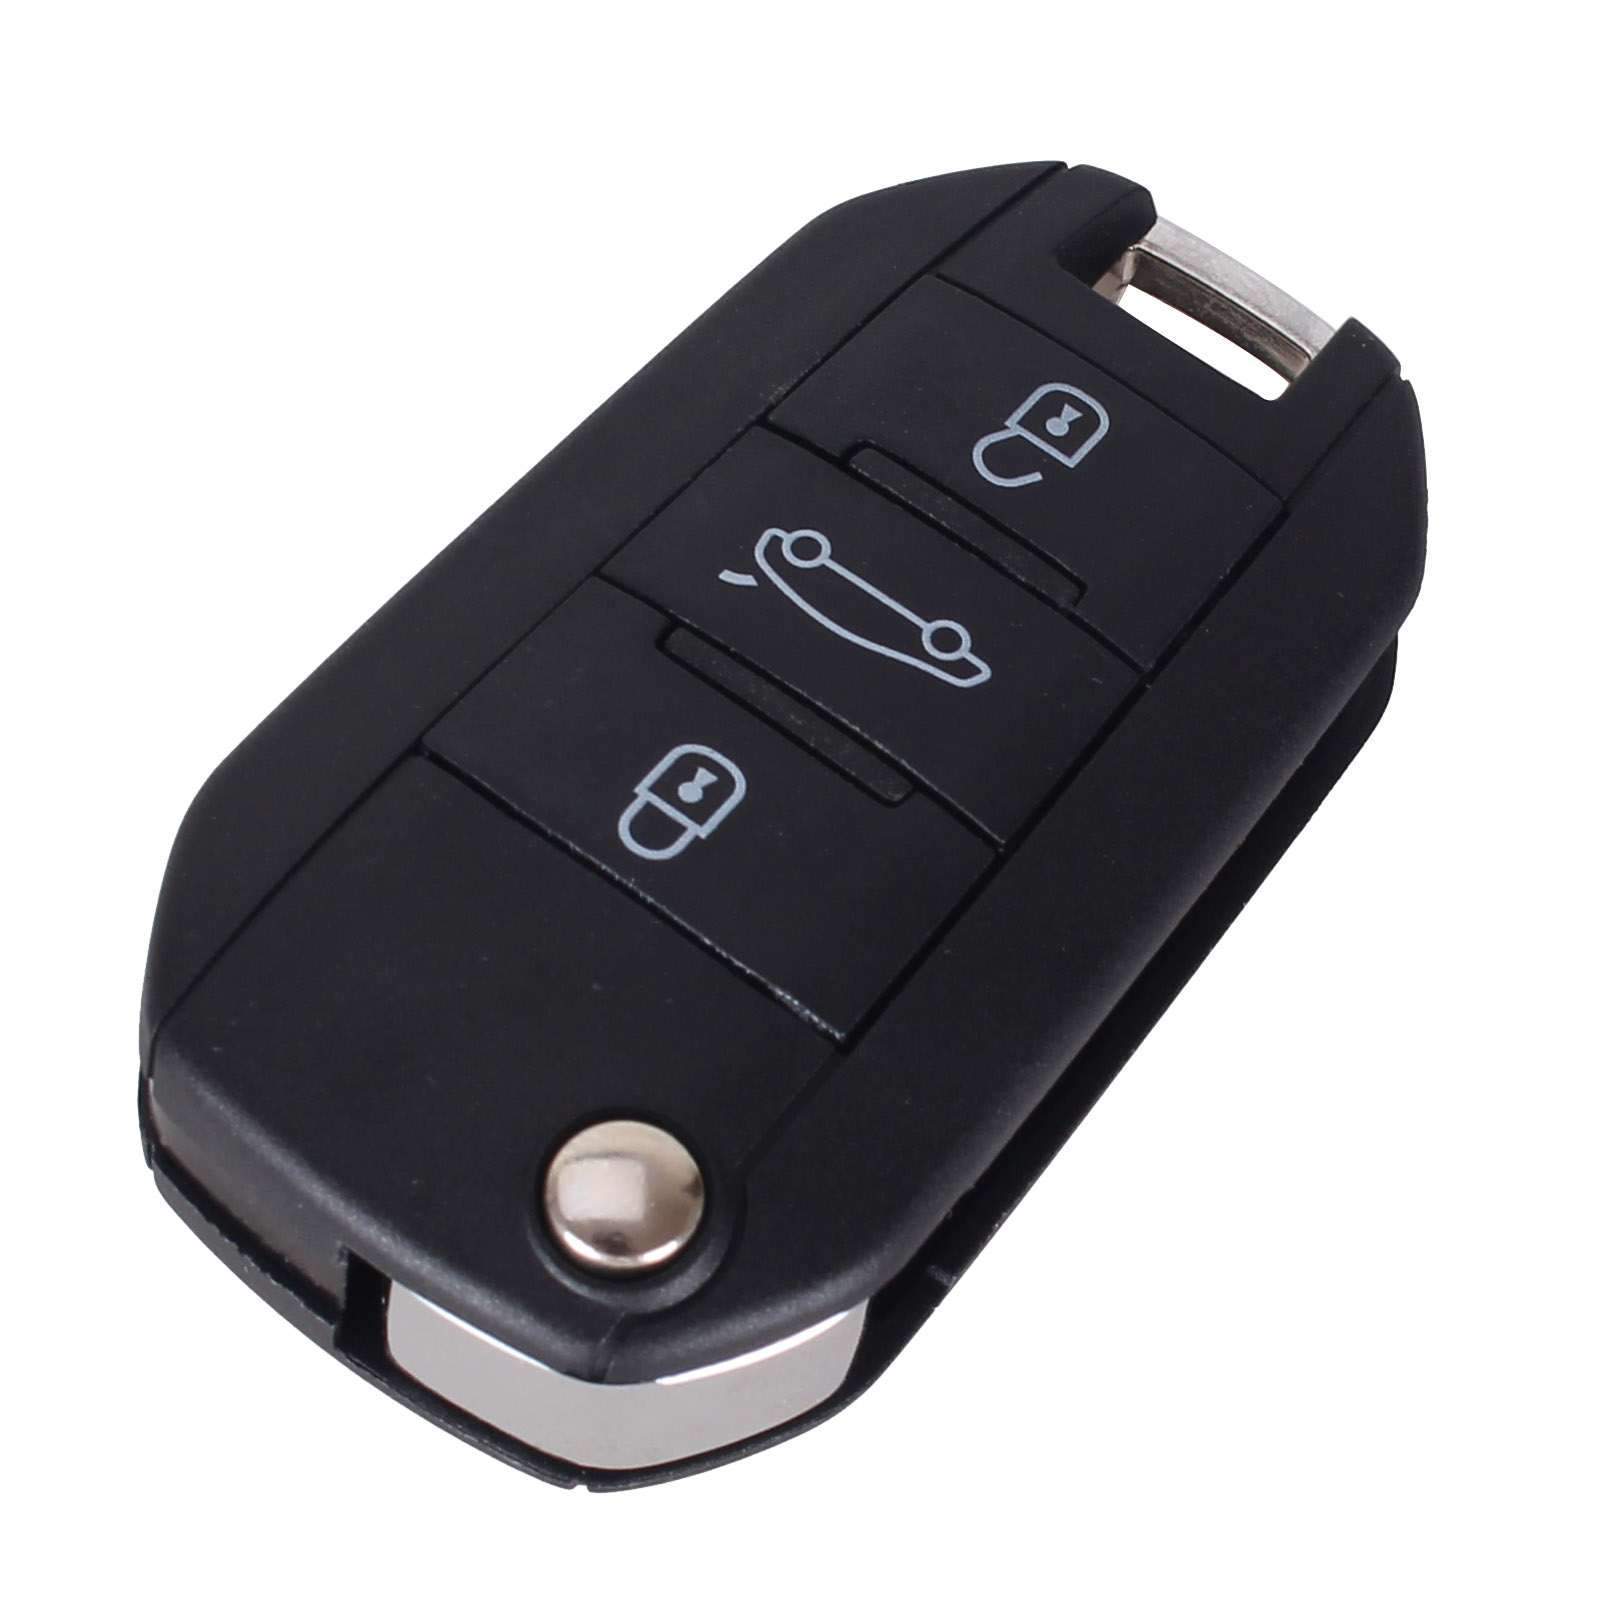 Fekete színű, 3 gombos Peugeot és Citroen kulcs, kulcsház. Fehér mintával